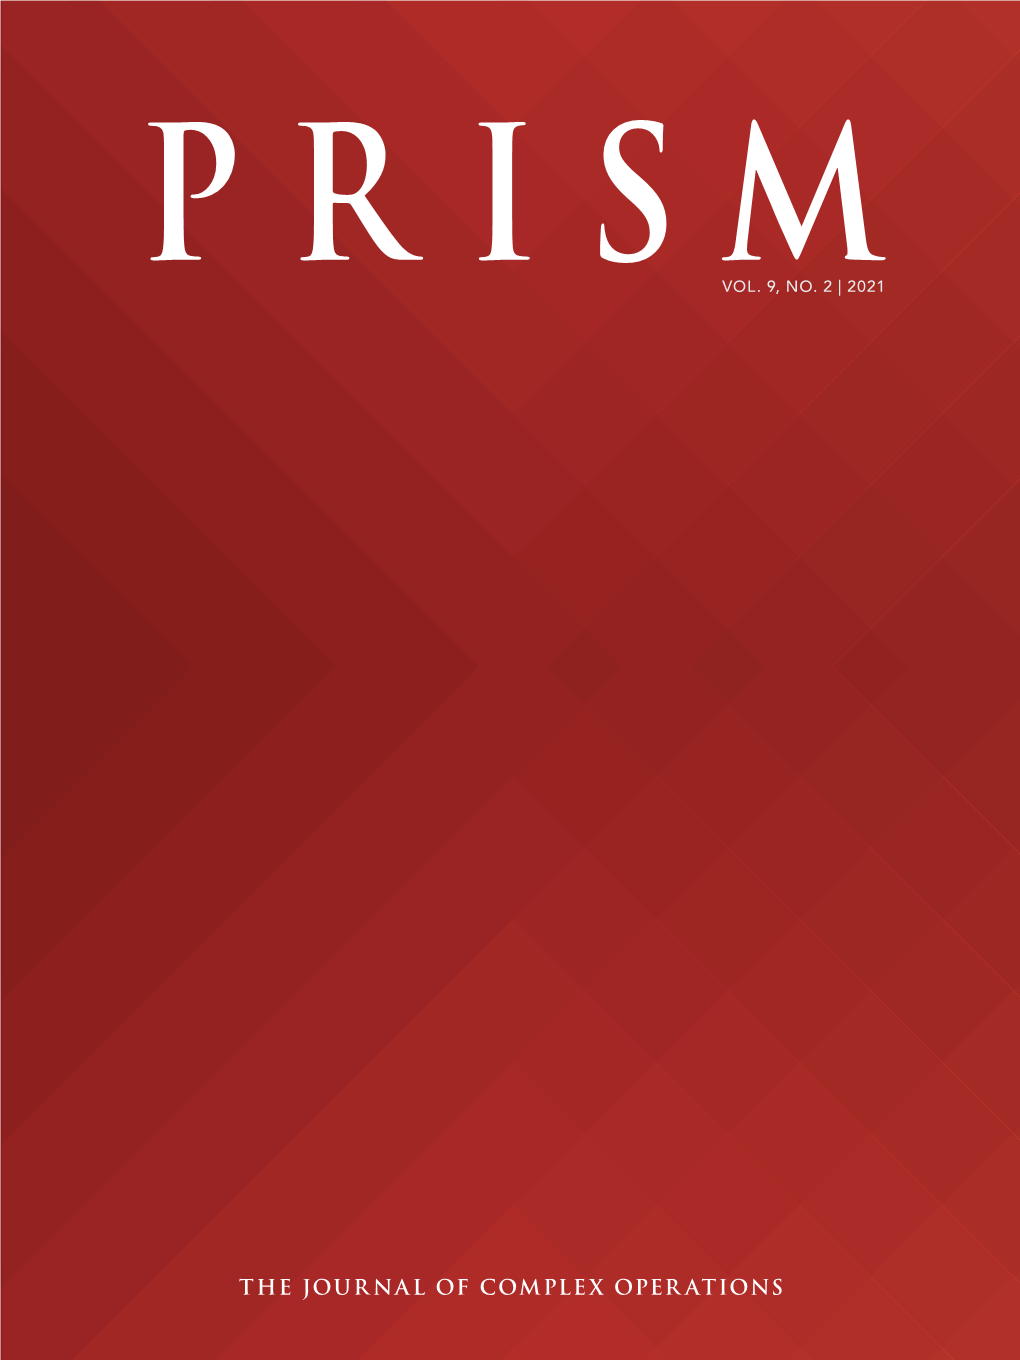 Prism Vol. 9, No. 2 Prism About Vol